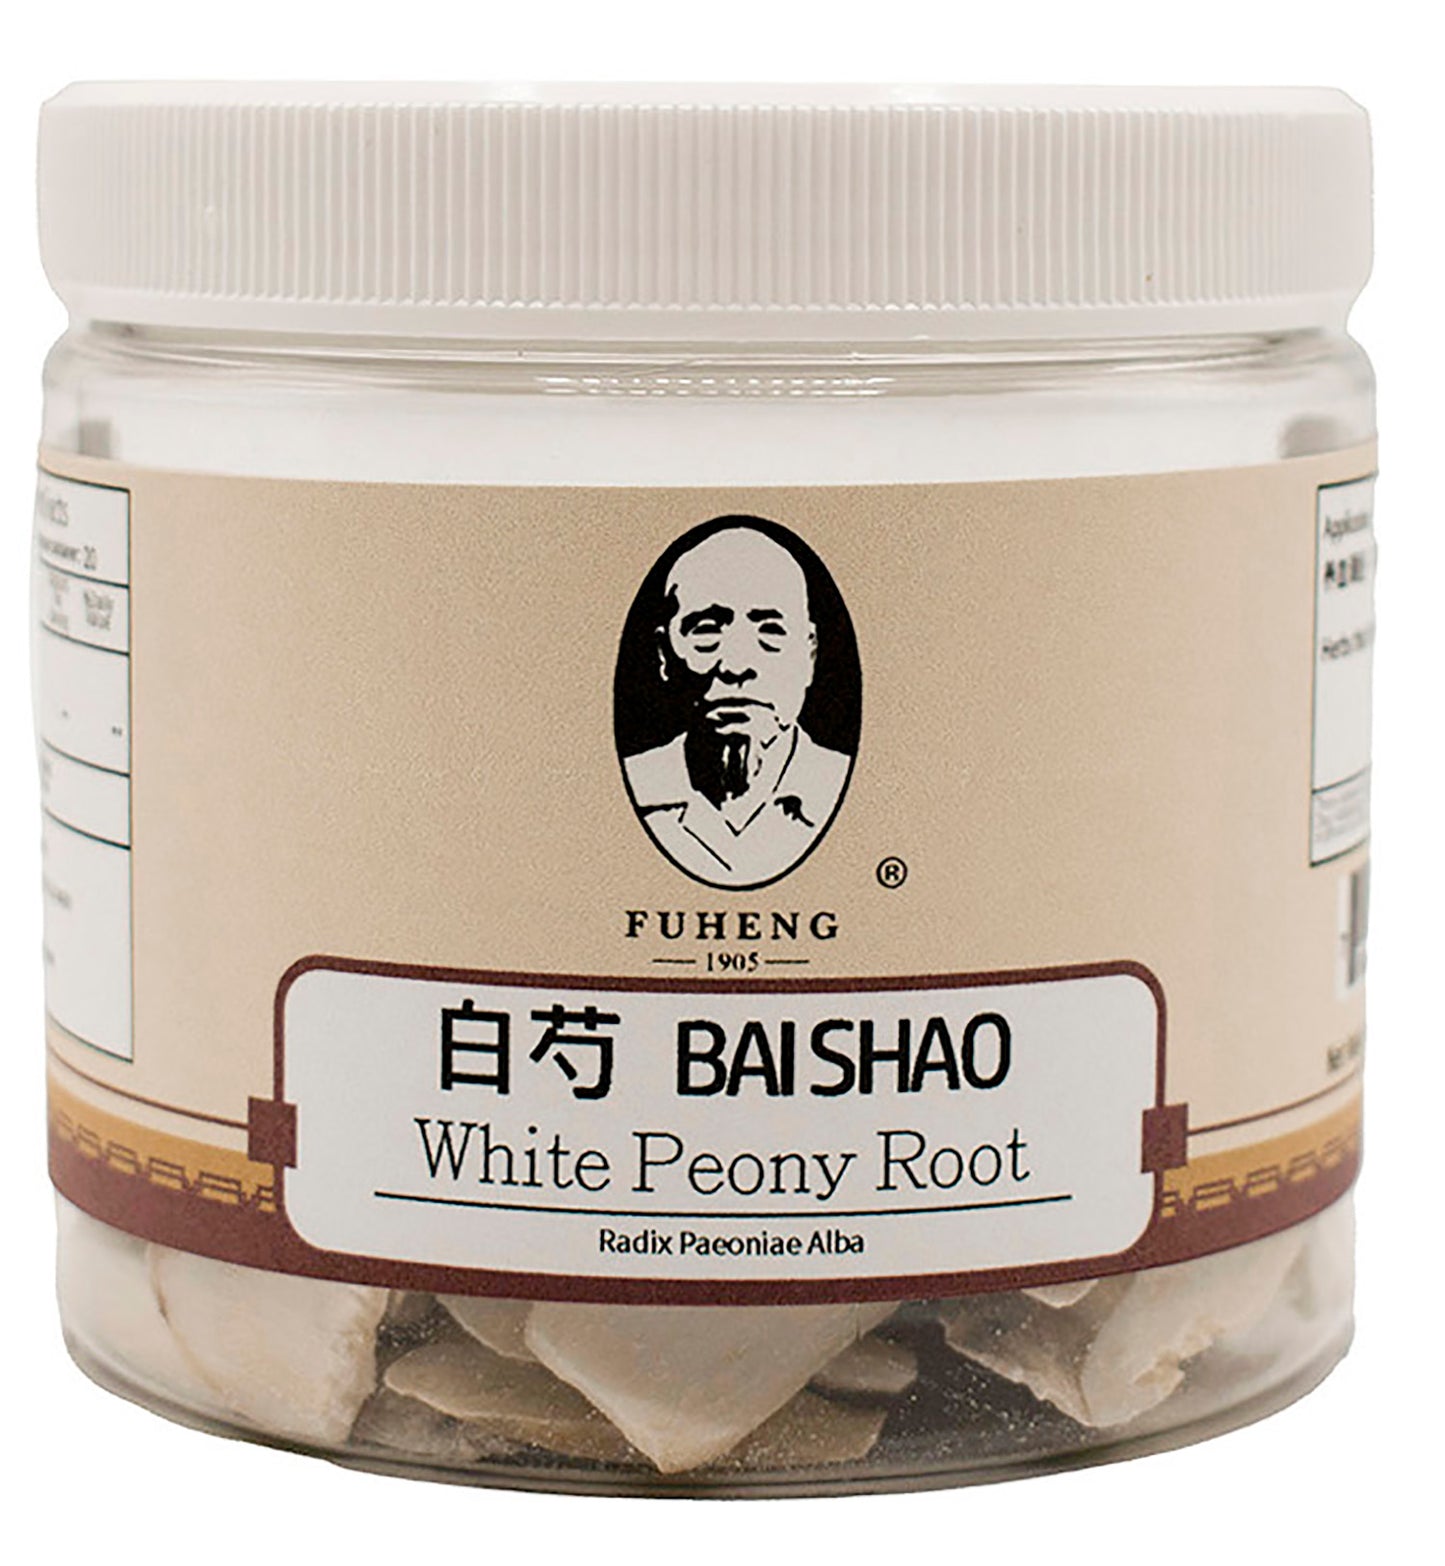 BAI SHAO - 白芍 - White Peony Root - 100g